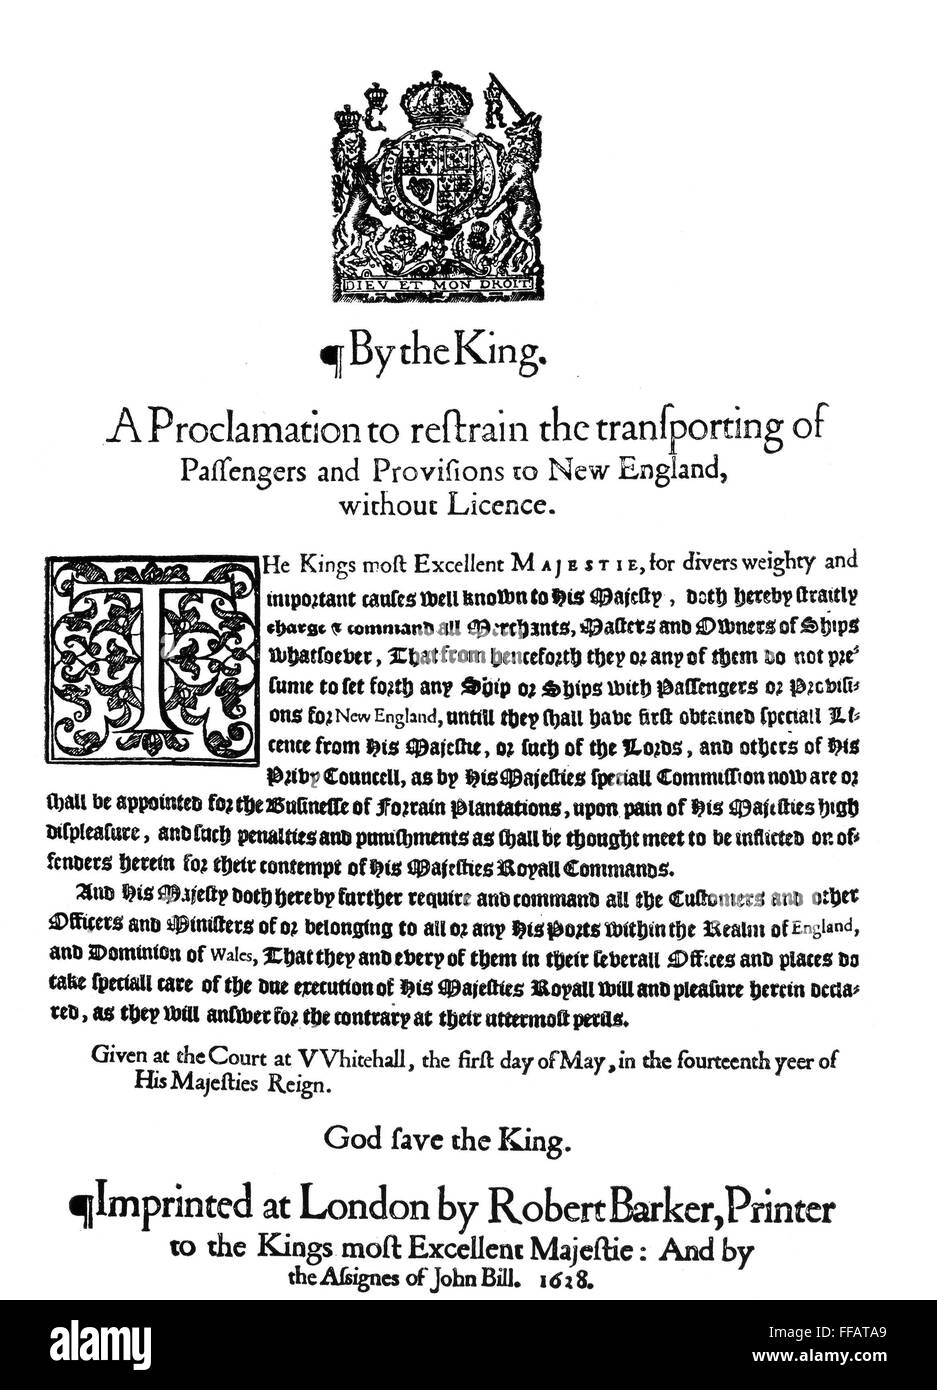 Panfleto colonial, 1628. /NBroadside, publicado en Inglaterra en 1628, en relación con el transporte de pasajeros a Nueva Inglaterra sin licencia. Foto de stock